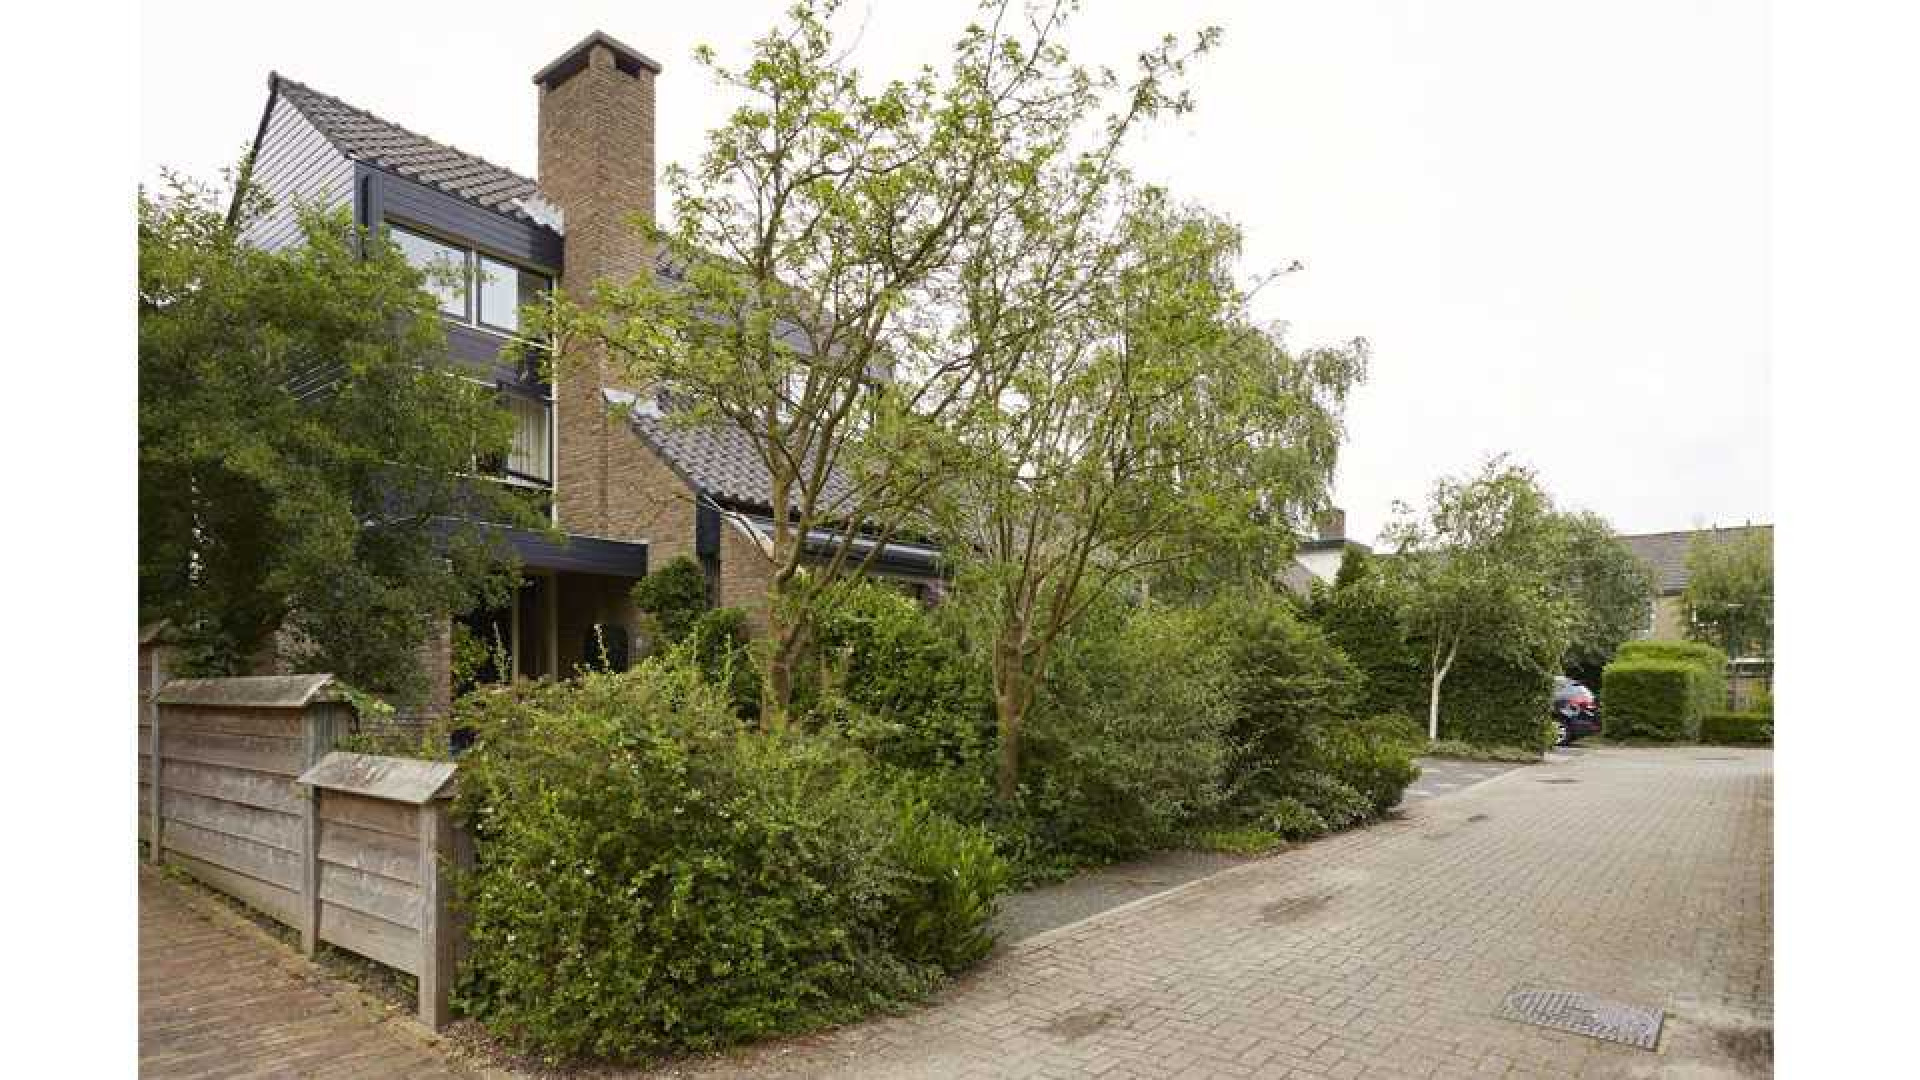 Voormalig NOS Journaal presentator Gijs Wanders zet zijn familiehuis te koop. Zie foto's